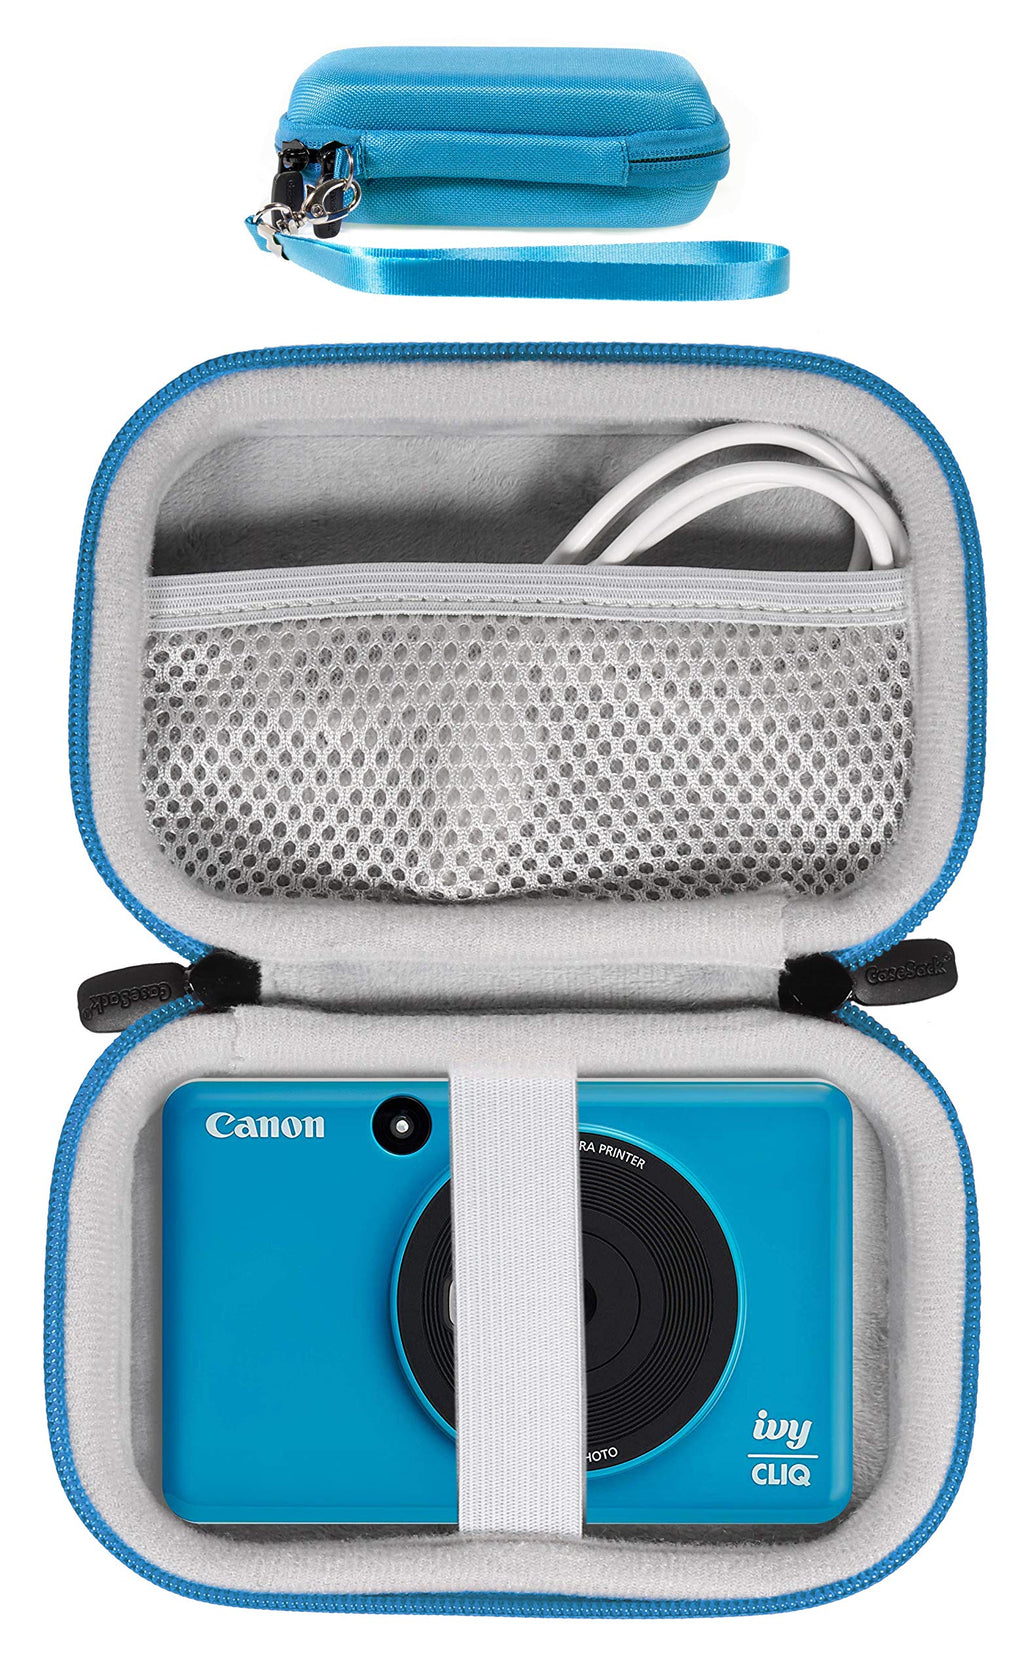  [AUSTRALIA] - Protective Case for Canon Ivy CLIQ+, CLIQ, CLIQ 2, CLIQ+2 Instant Camera Printer and Mobile Mini Photo Printer, Also for HP Sprocket (2nd Edition)(Seaside Blue) Seaside Blue